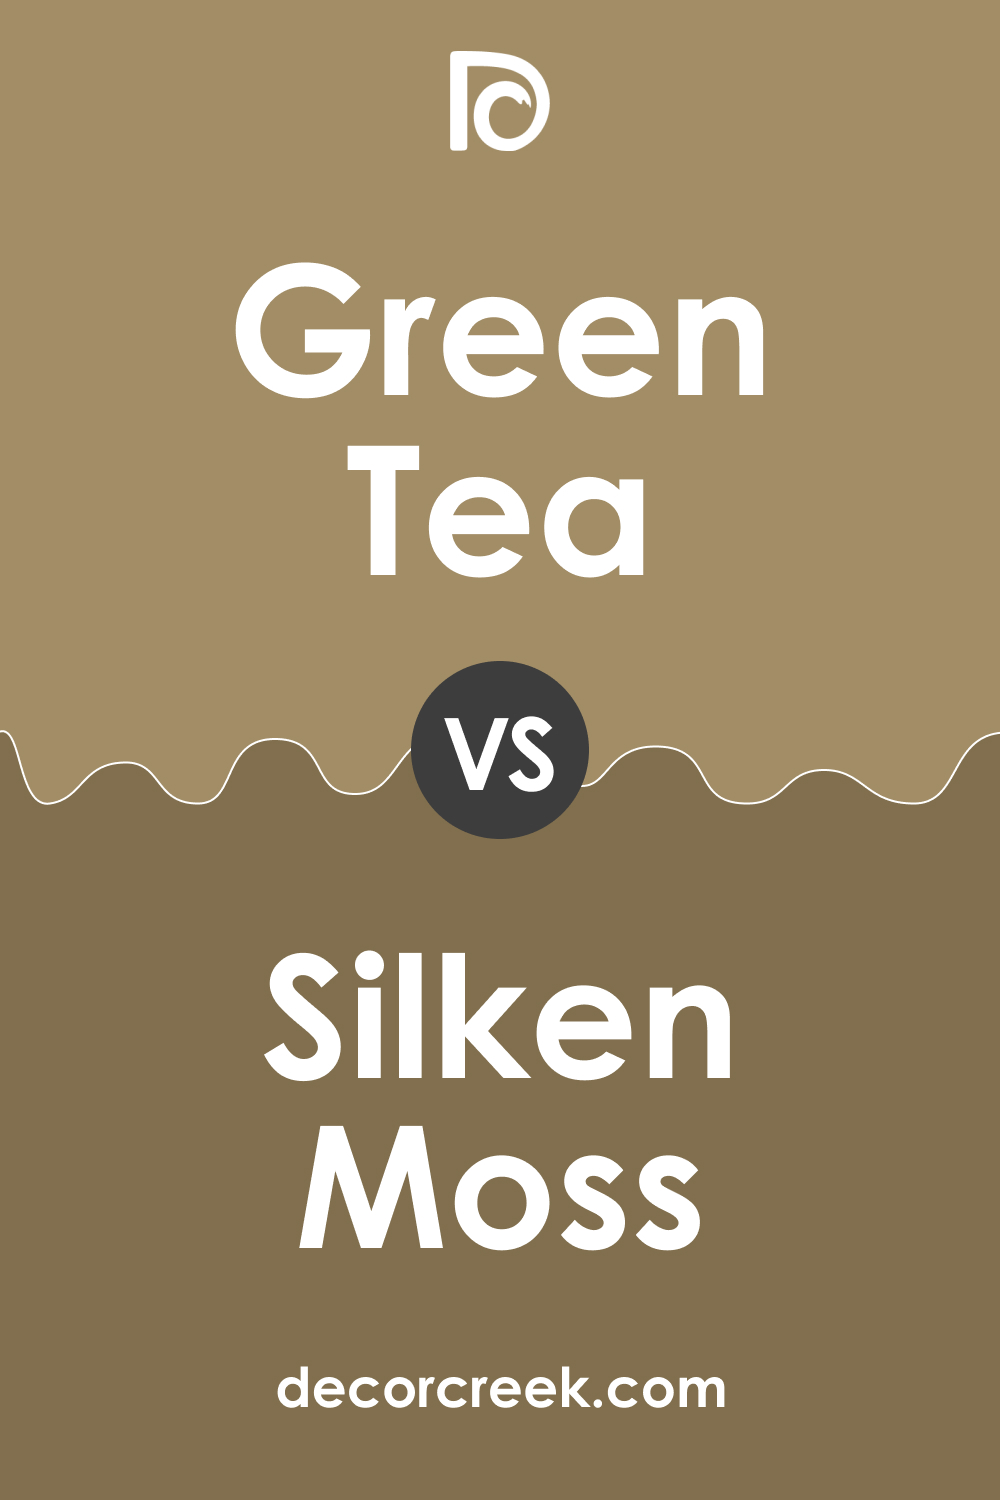 Green Tea 236 vs. BM 237 Silken Moss